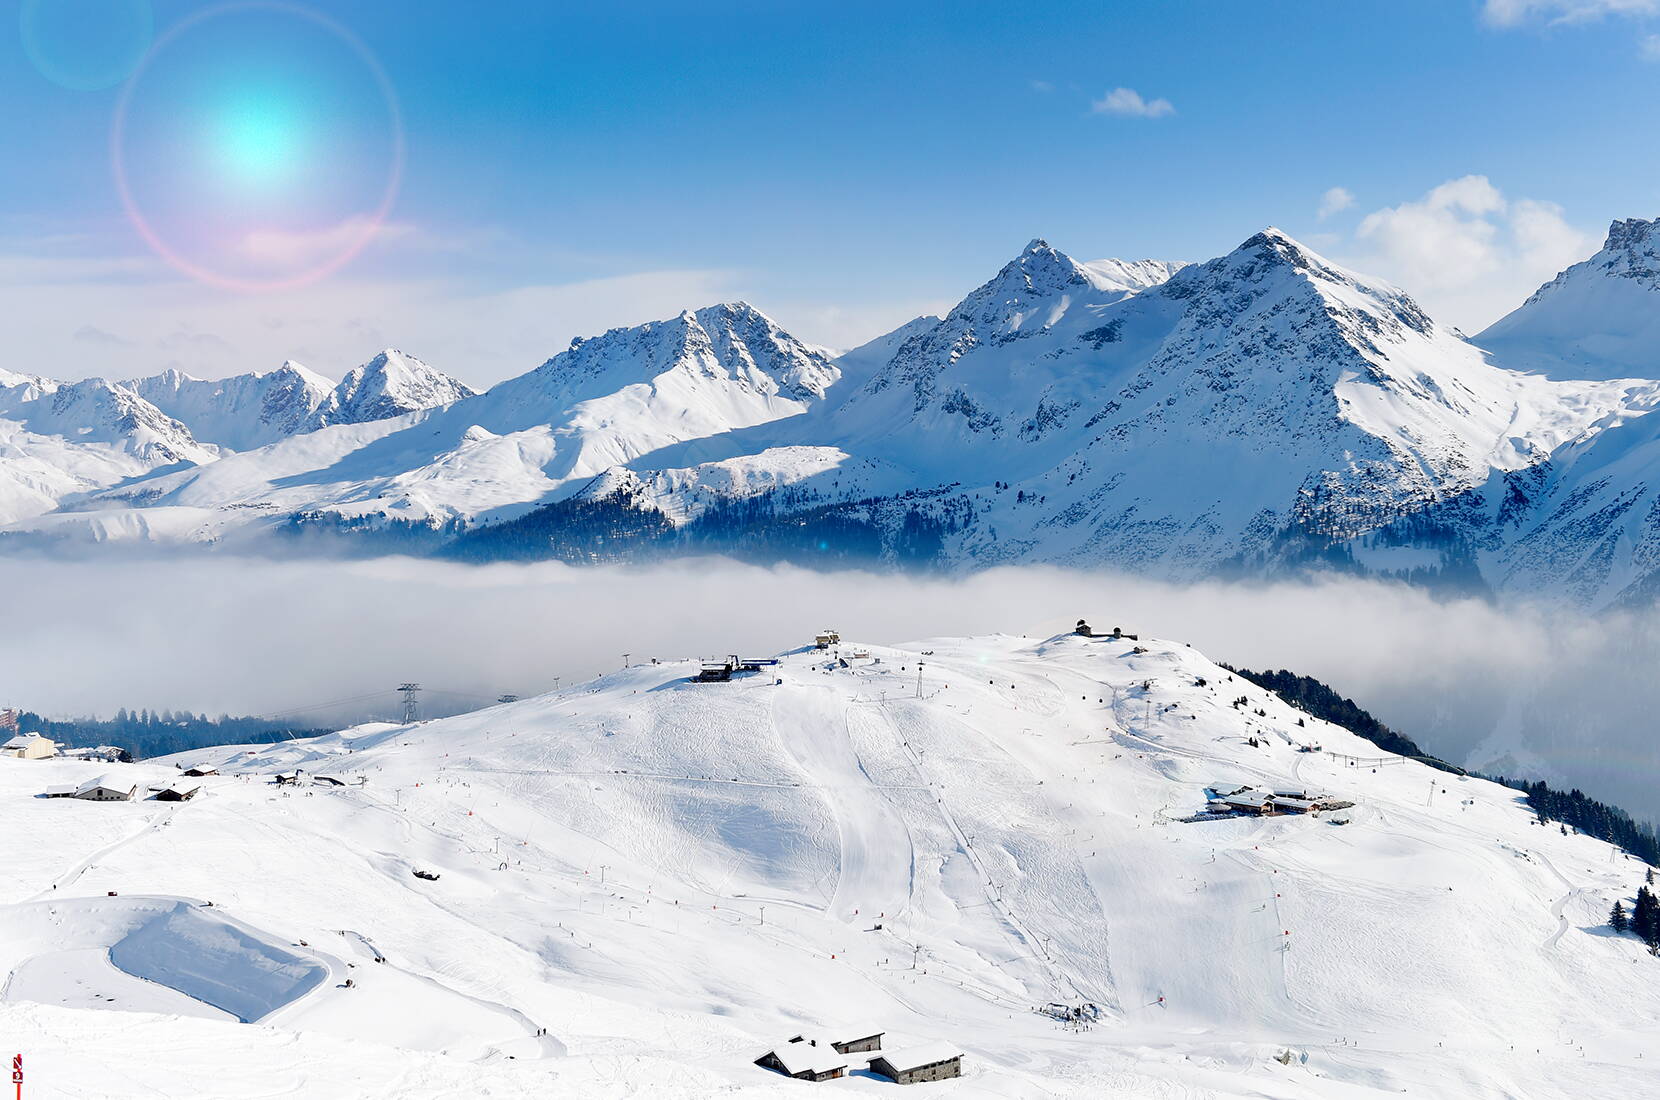 Familienausflug Arosa Lenzerheide. Das Schneesportgebiet Arosa Lenzerheide freut sich auf euren Besuch in den Bergen und lässt euer Herz in unserem Schneesportparadies höher schlagen.